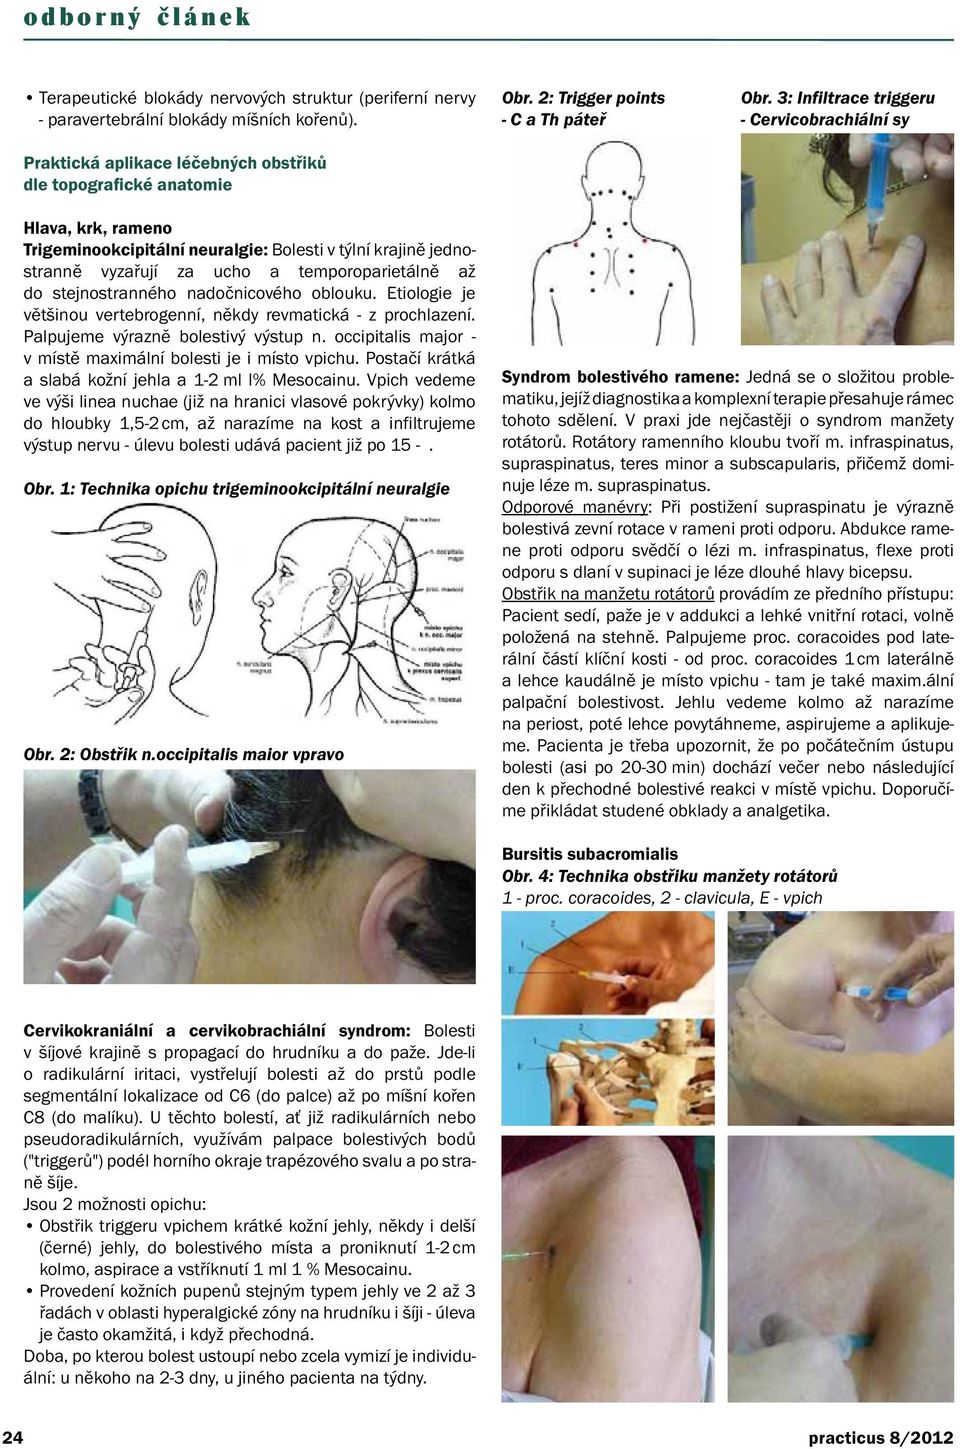 3: Infiltrace triggeru - Cervicobrachiální sy Hlava, krk, rameno Trigeminookcipitální neuralgie: Bolesti v týlní krajině jednostranně vyzařují za ucho a temporoparietálně až do stejnostranného